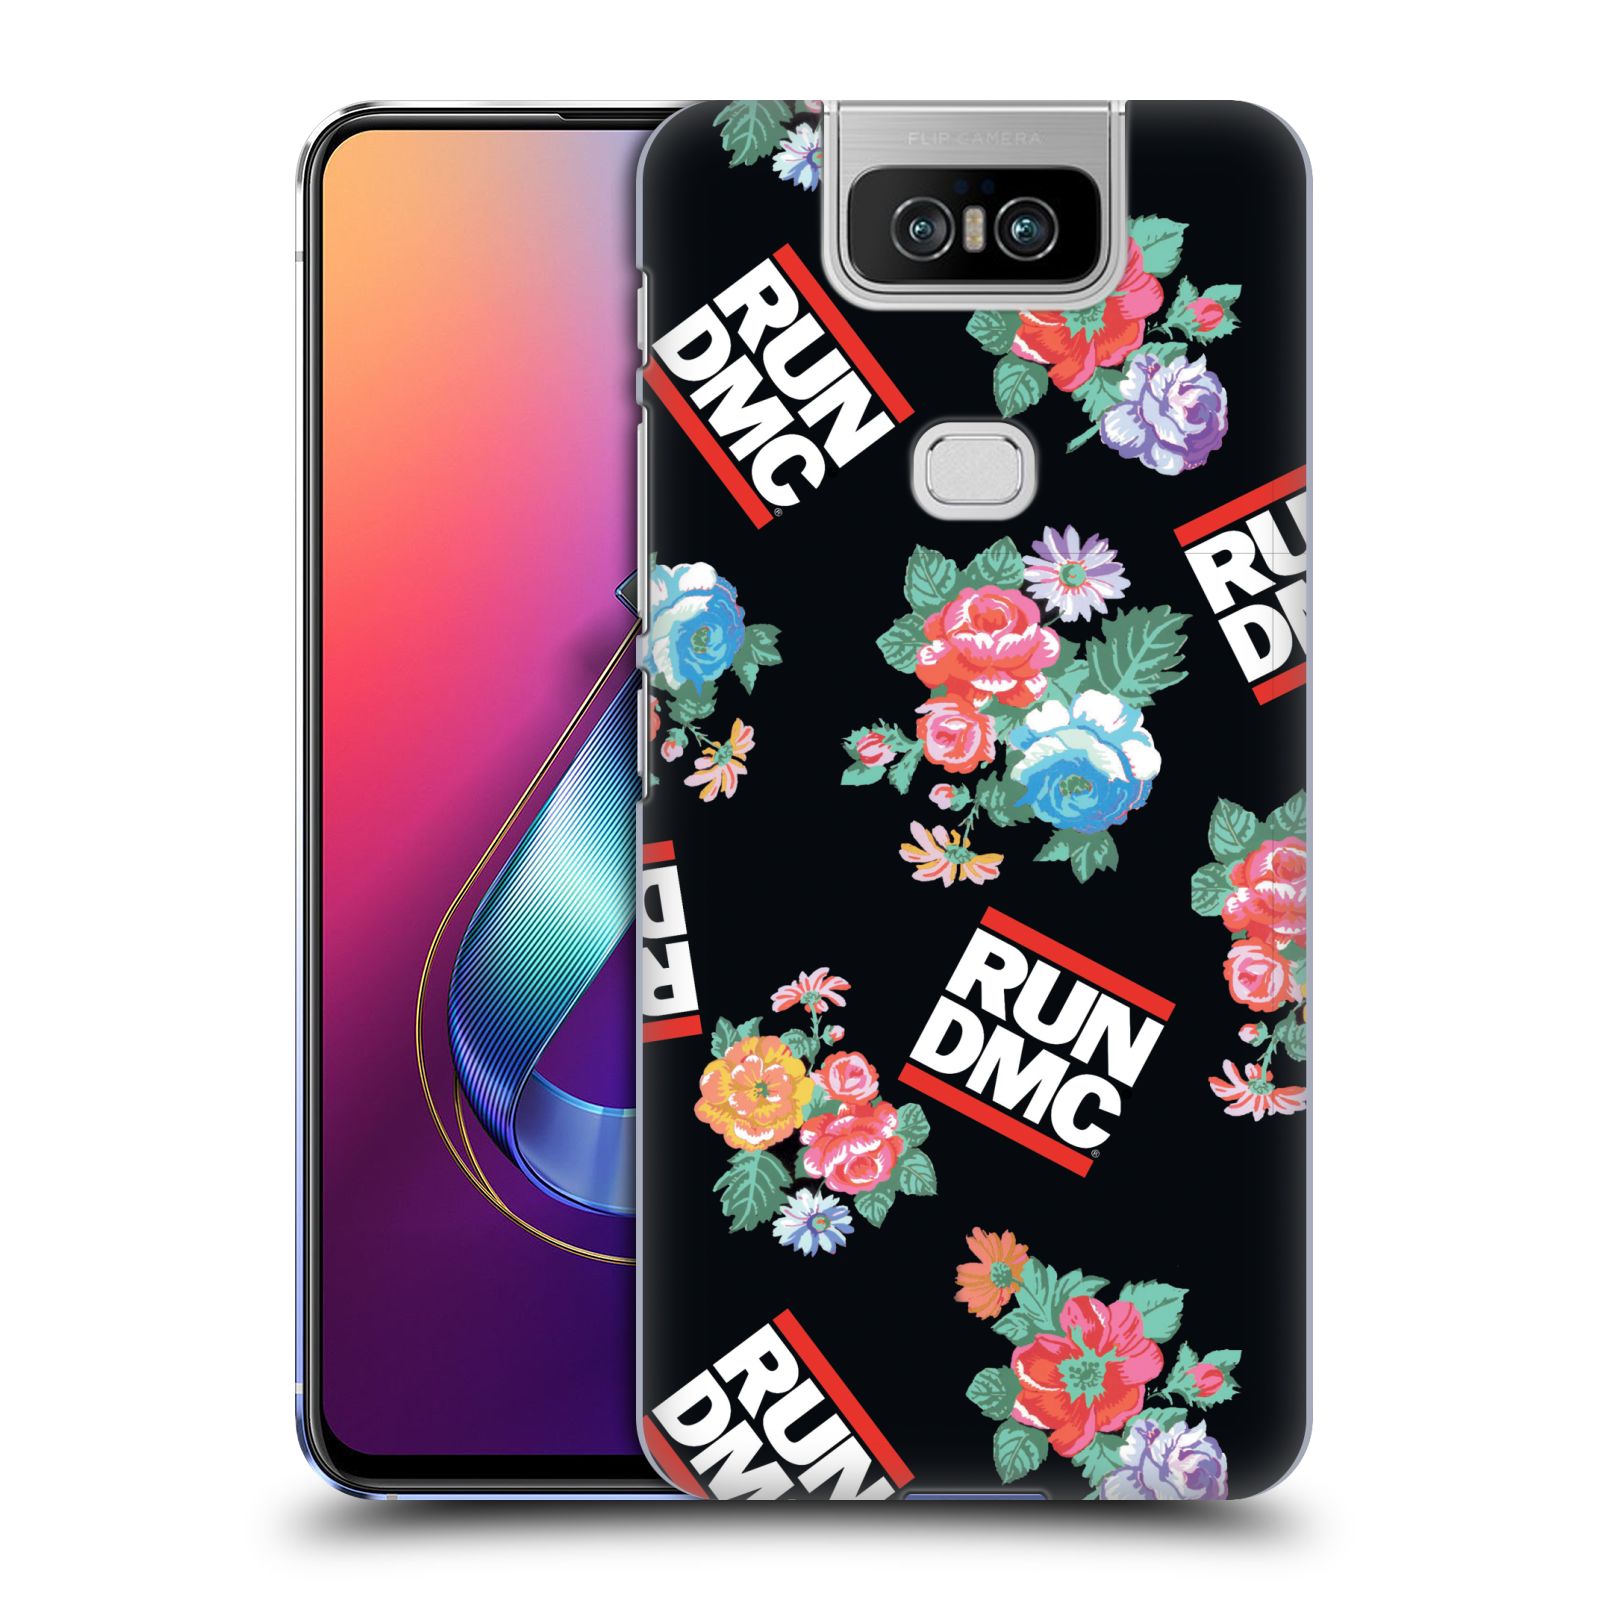 Pouzdro na mobil Asus Zenfone 6 ZS630KL - HEAD CASE - rapová kapela Run DMC květiny černé pozadí